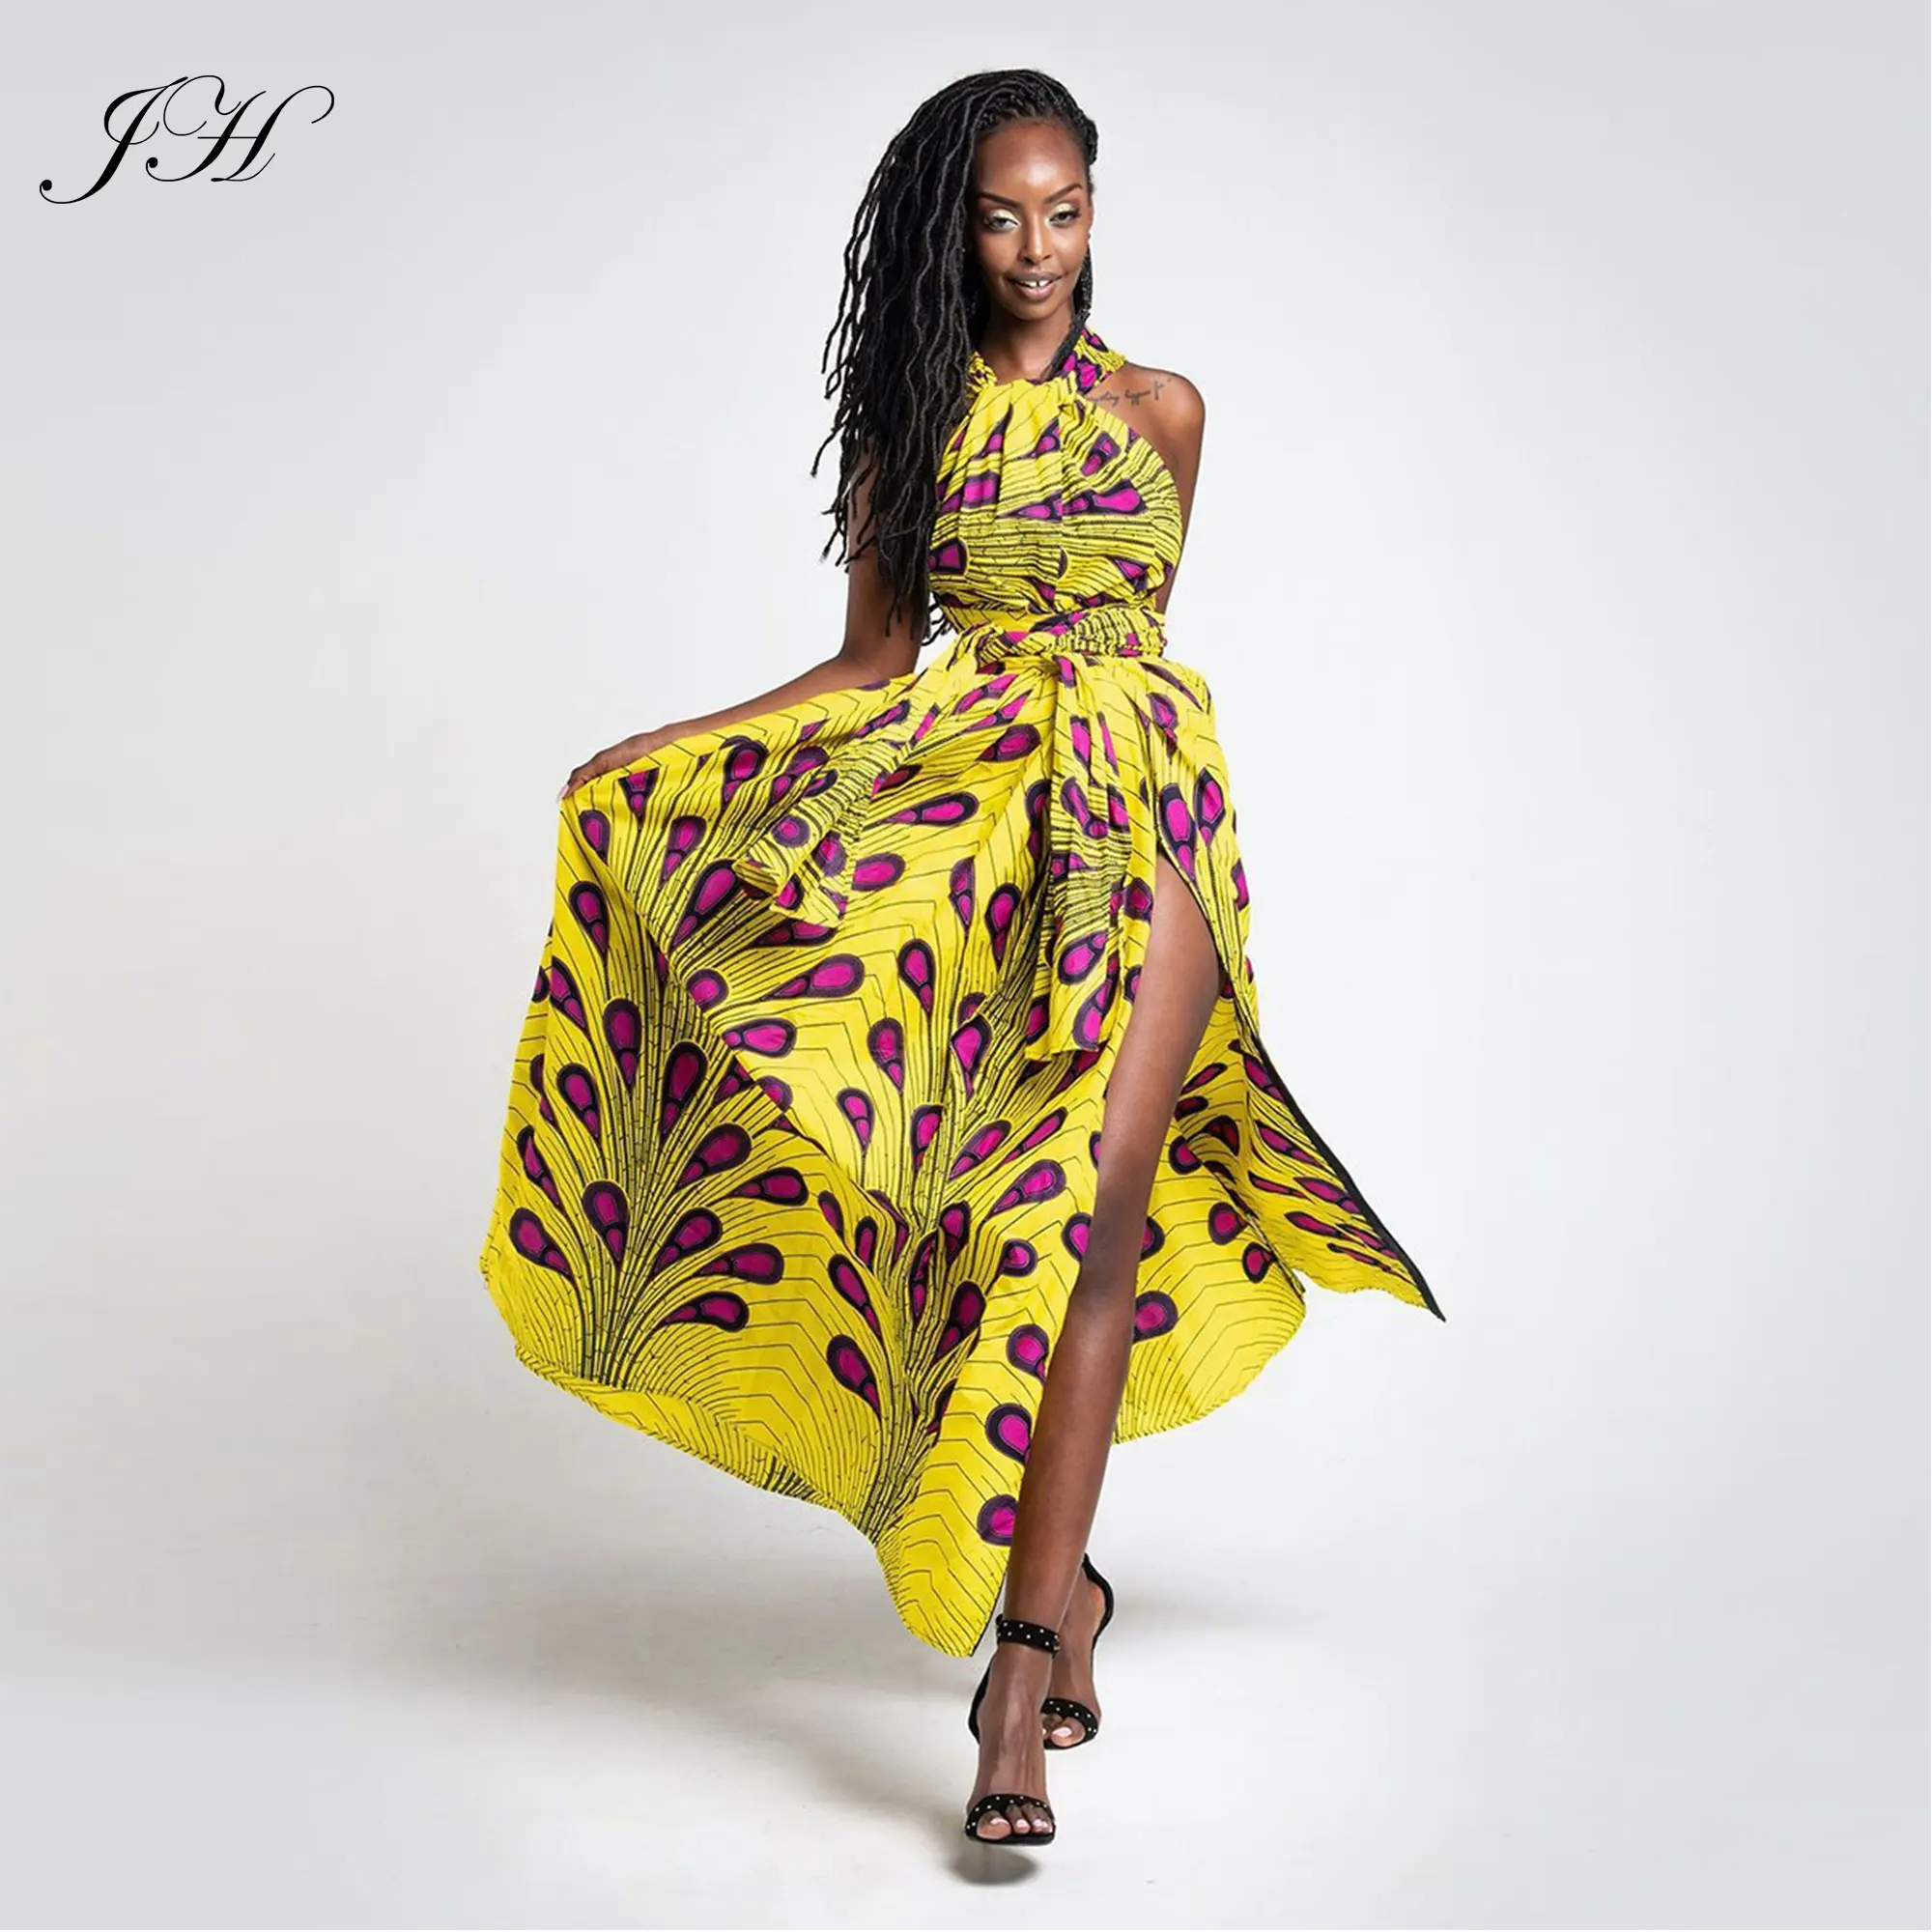 Neueste afrikanische Kitenge Mode 2019 Maxi bedruckte Pfau Frauen Kleider Sexy Bandage Fancy Party Kleid